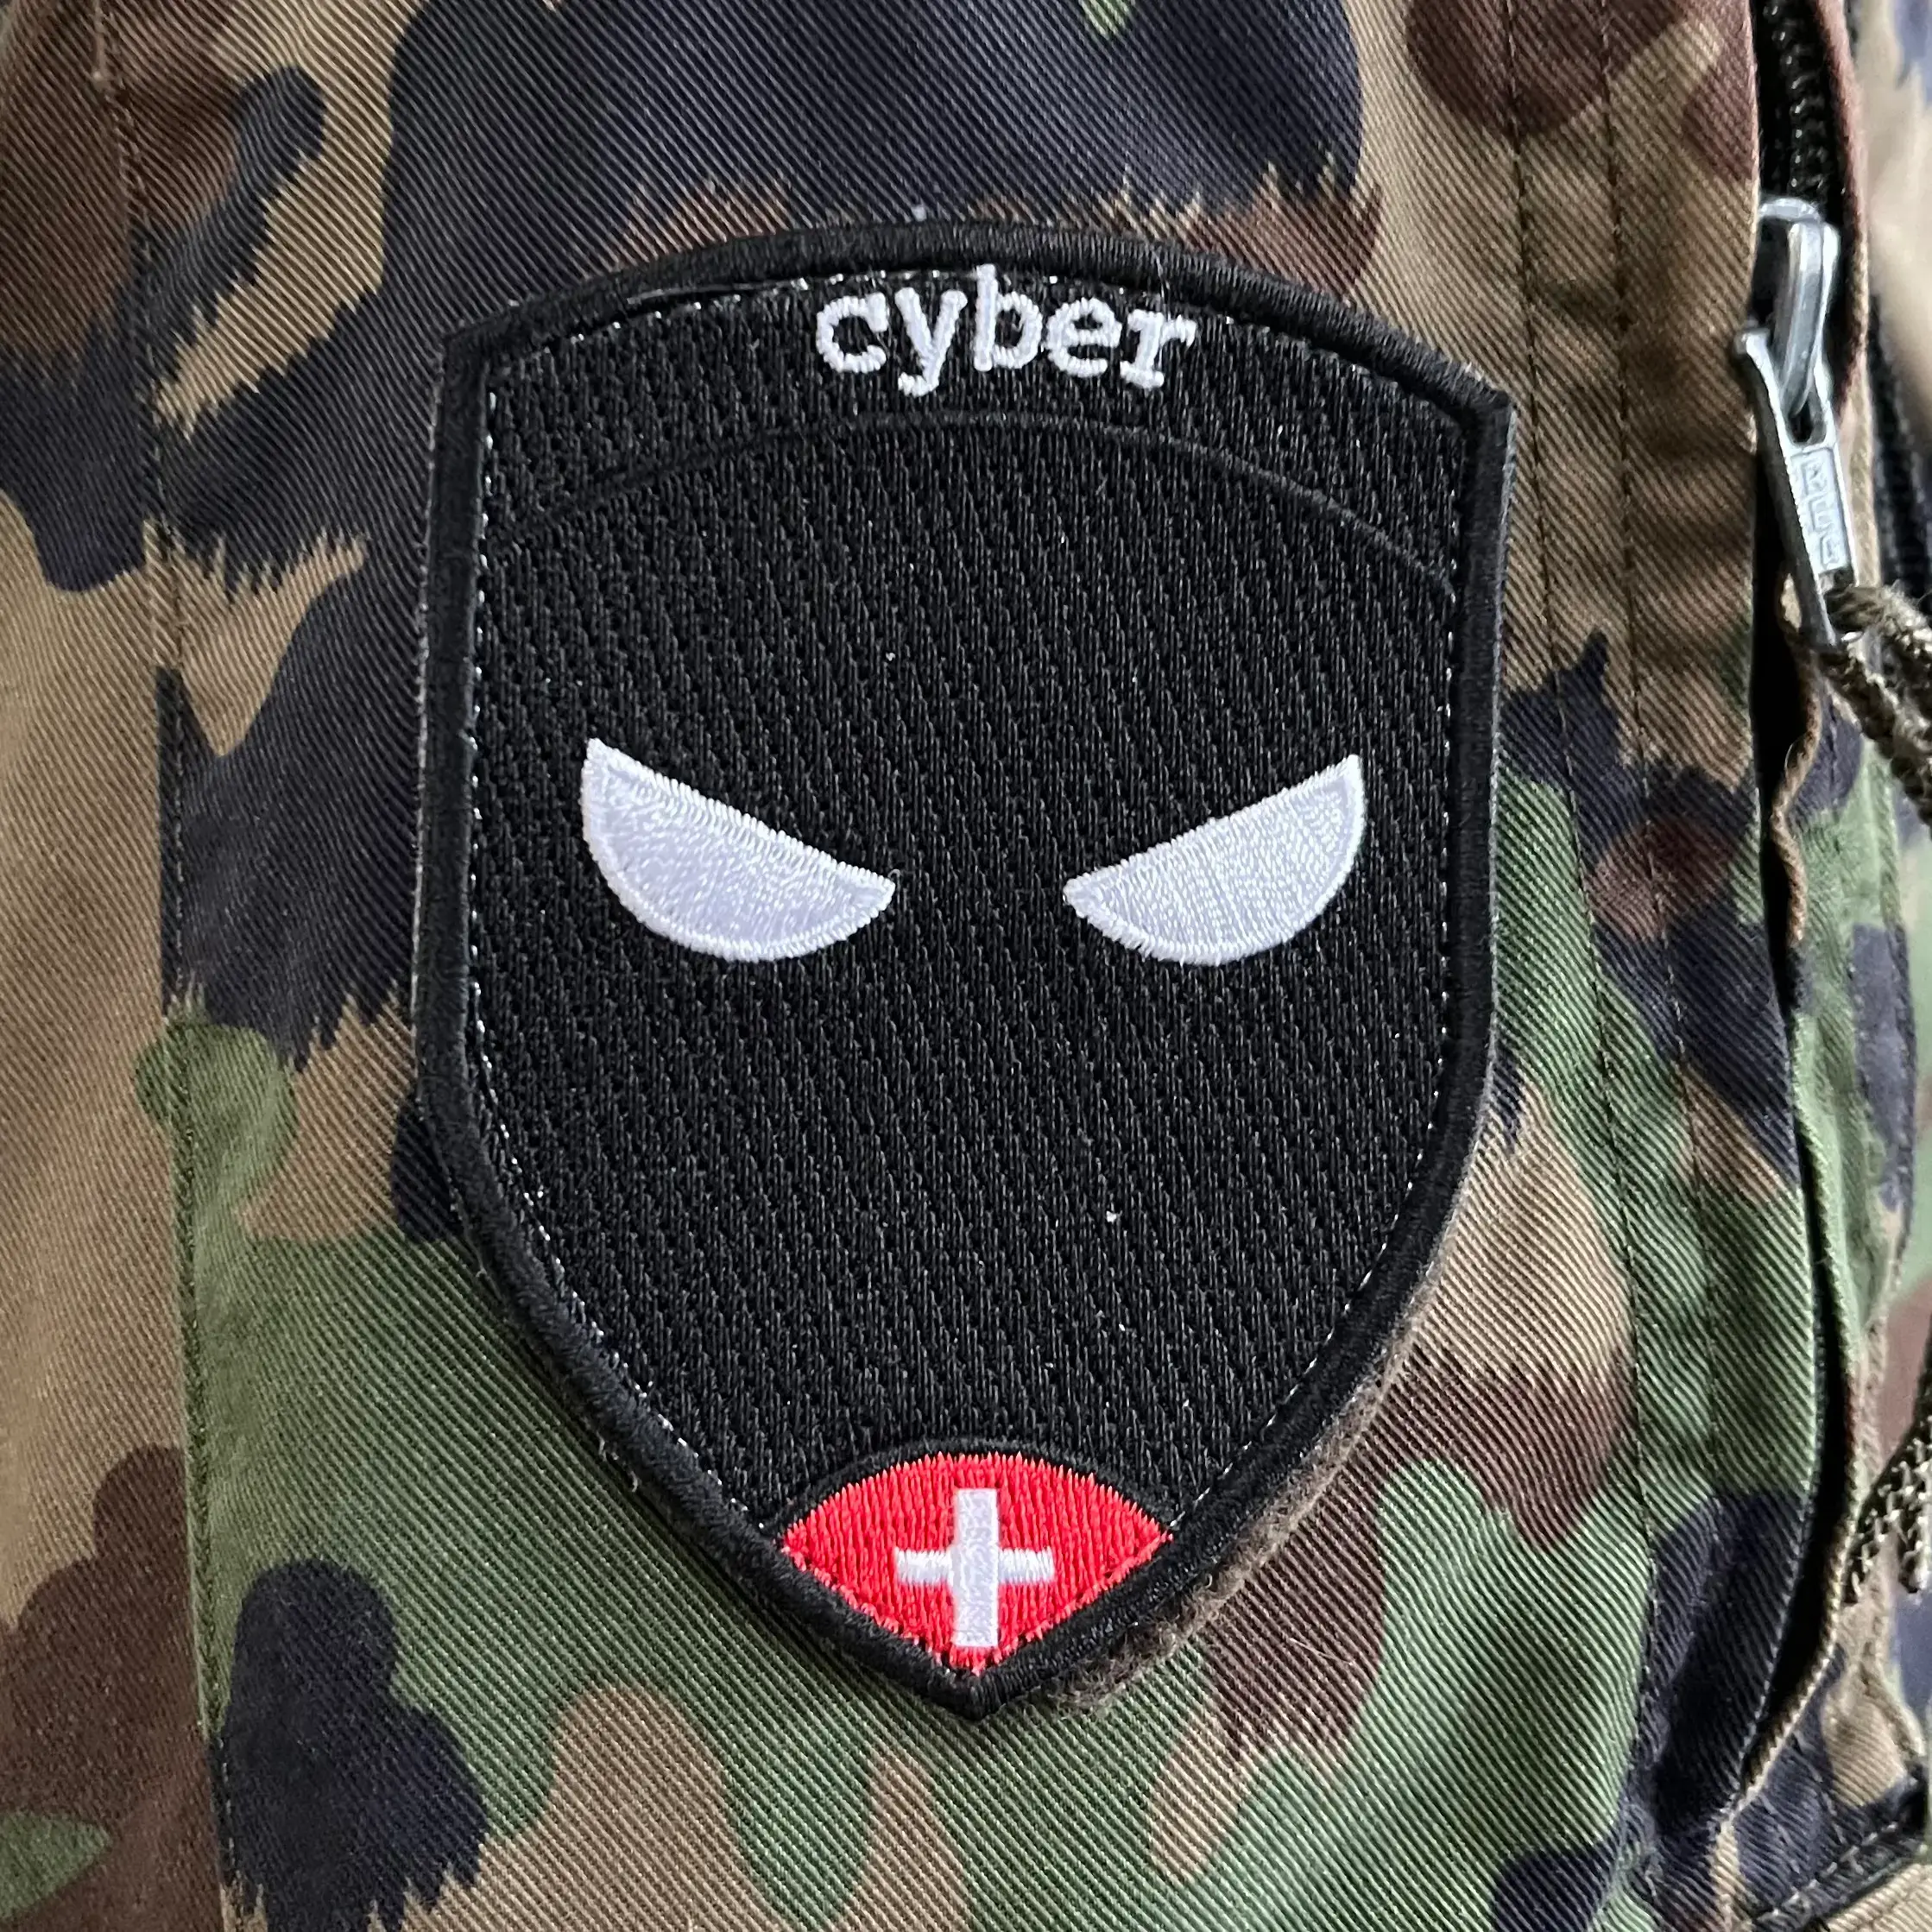 Militärisches Abzeichen von RS, gekauft und hergestellt auf RS Badge. Das Abzeichen ist einfach und schlicht, auf einem schwarzen Hintergrund steht Cyber. Unten auf dem Abzeichen sehen wir ein Schweizer Kreuz auf einem roten Arroundi und in der Mitte des Abzeichens sind zwei offene Ninja-Augen abgebildet.